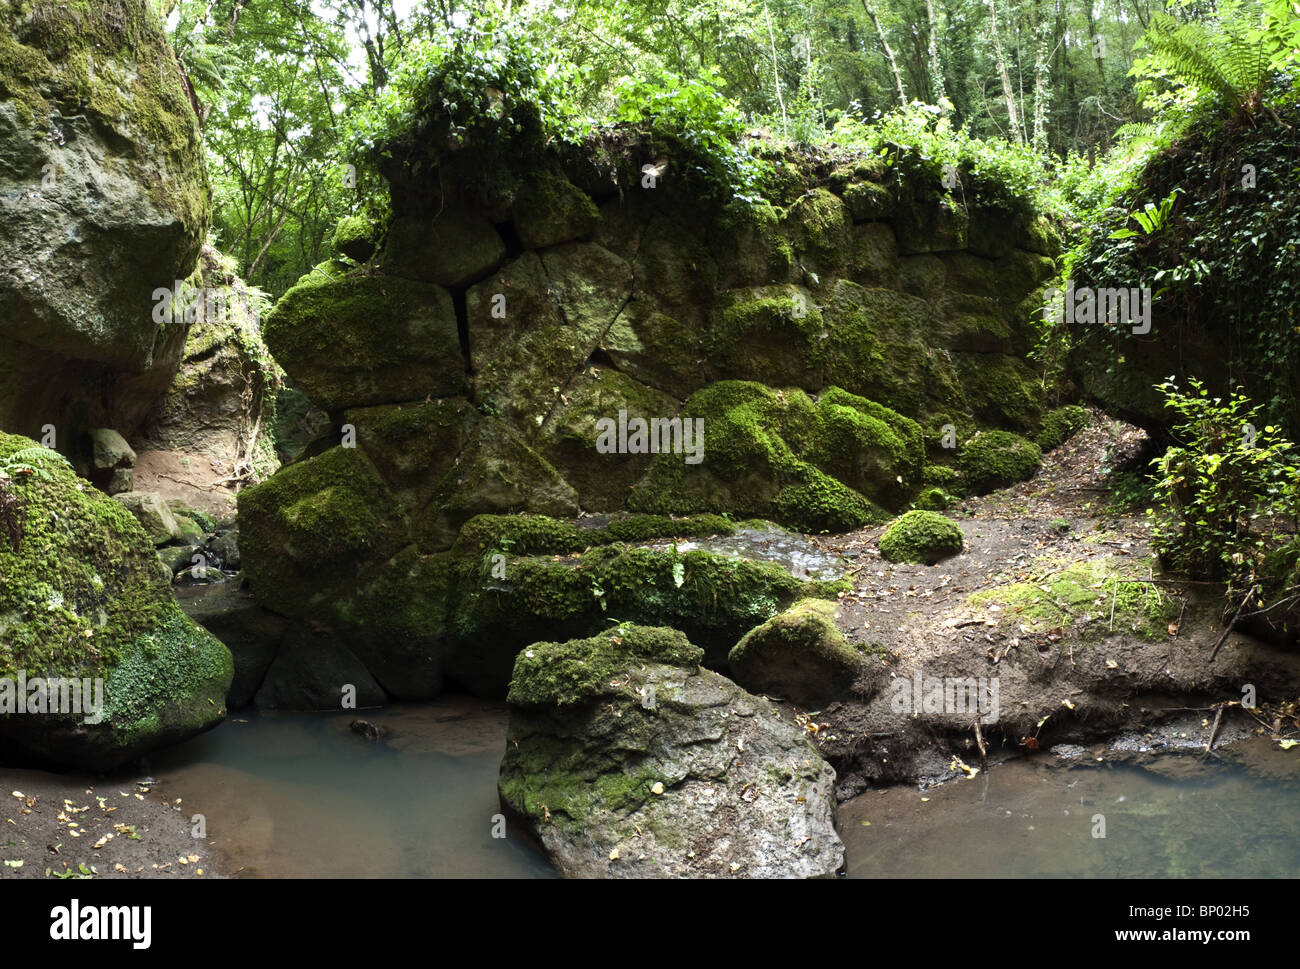 Resti di una diga Etrusca, vicino a Soriano nel Cimino, Italia centrale. Foto Stock